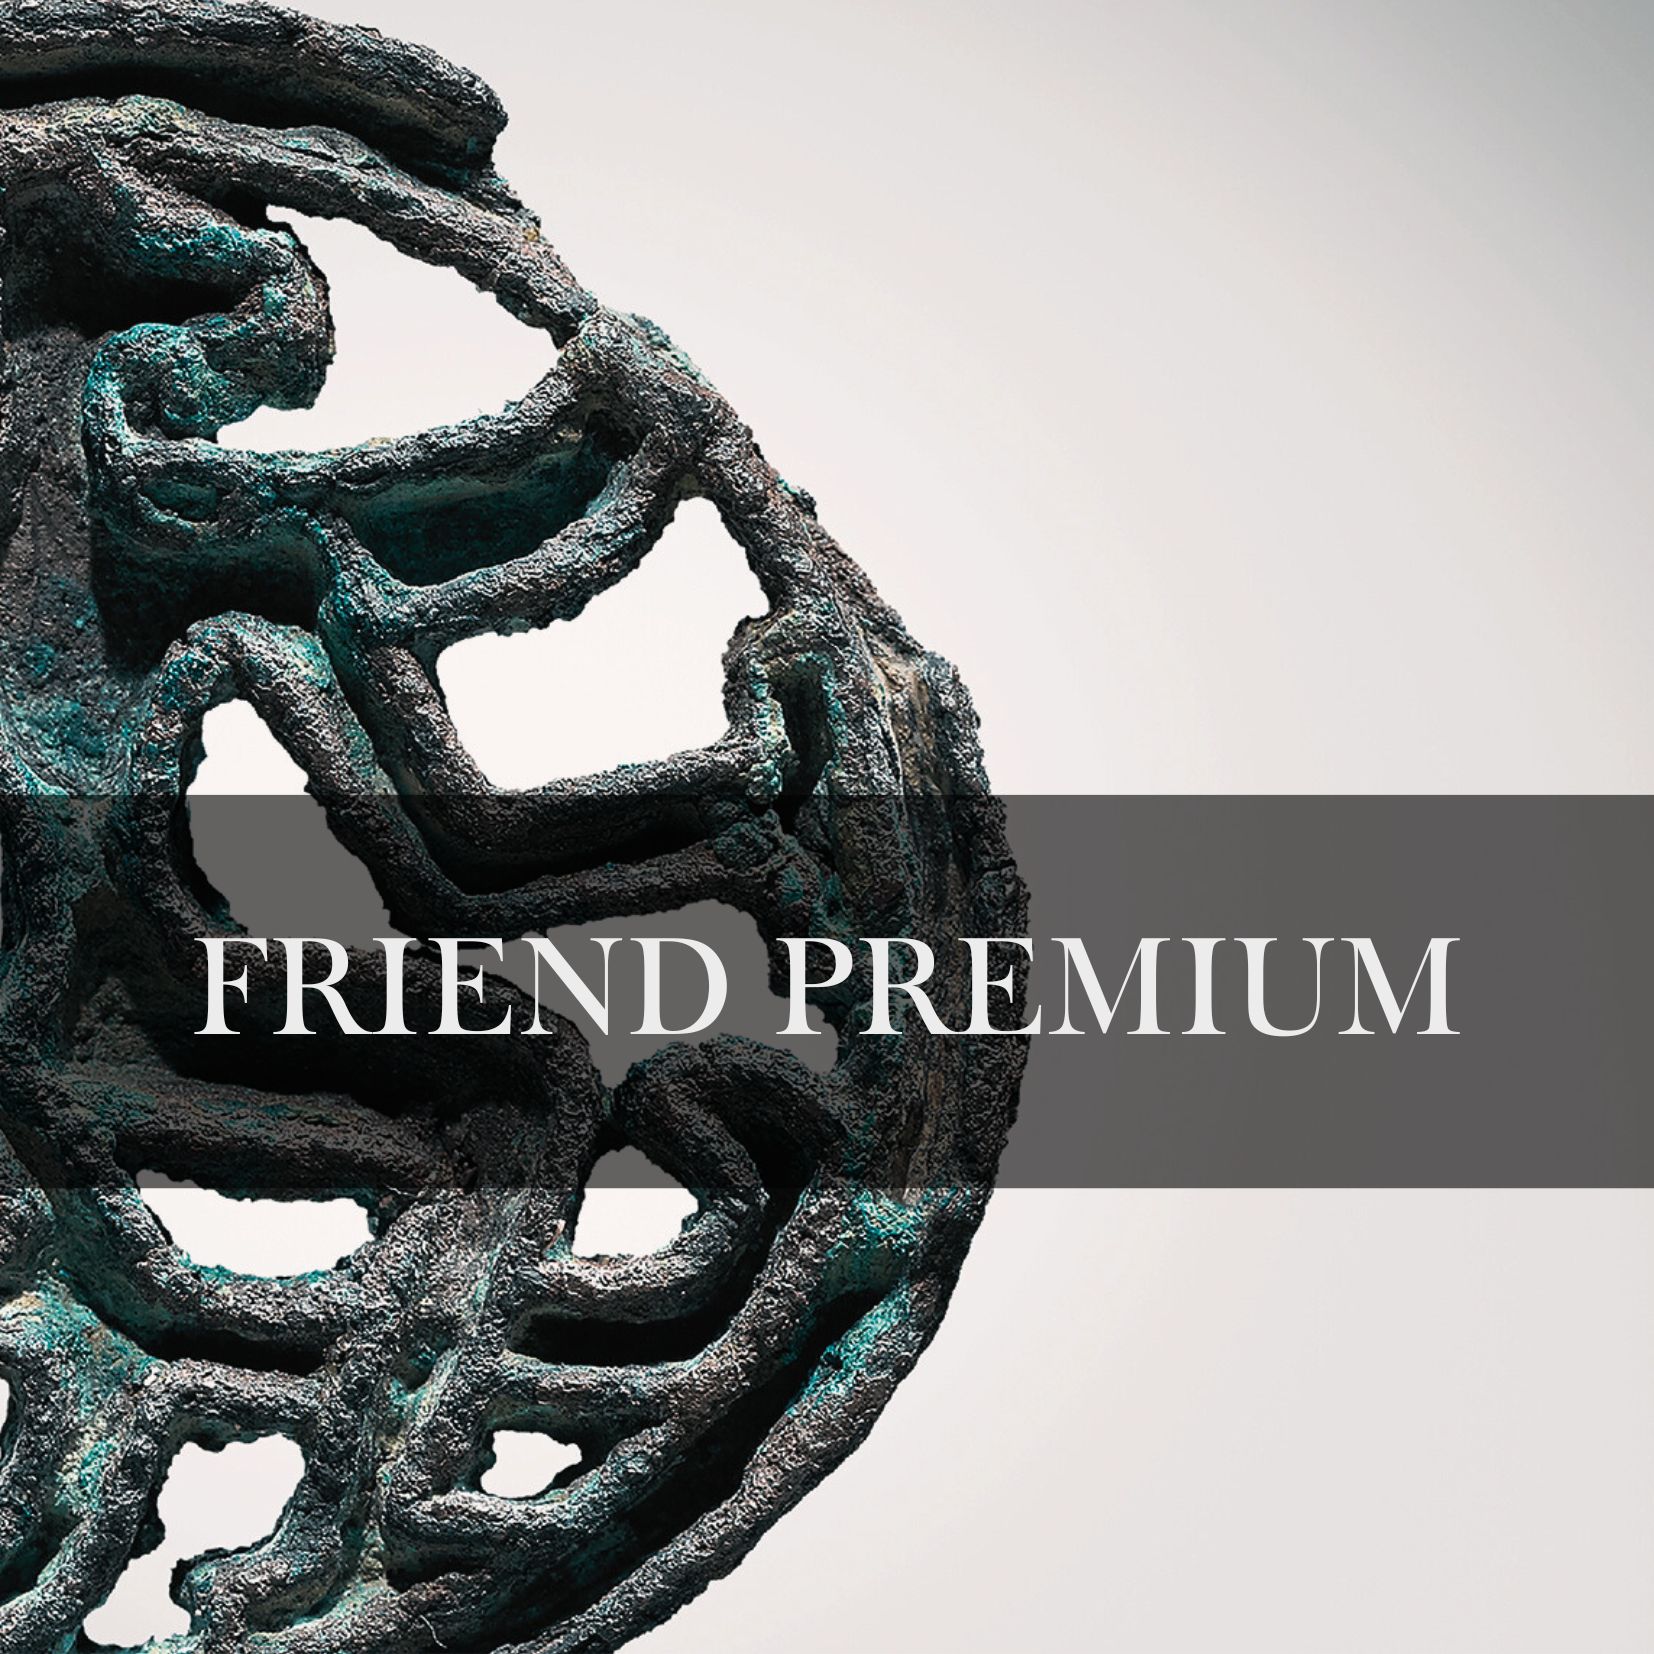 Friend Premium